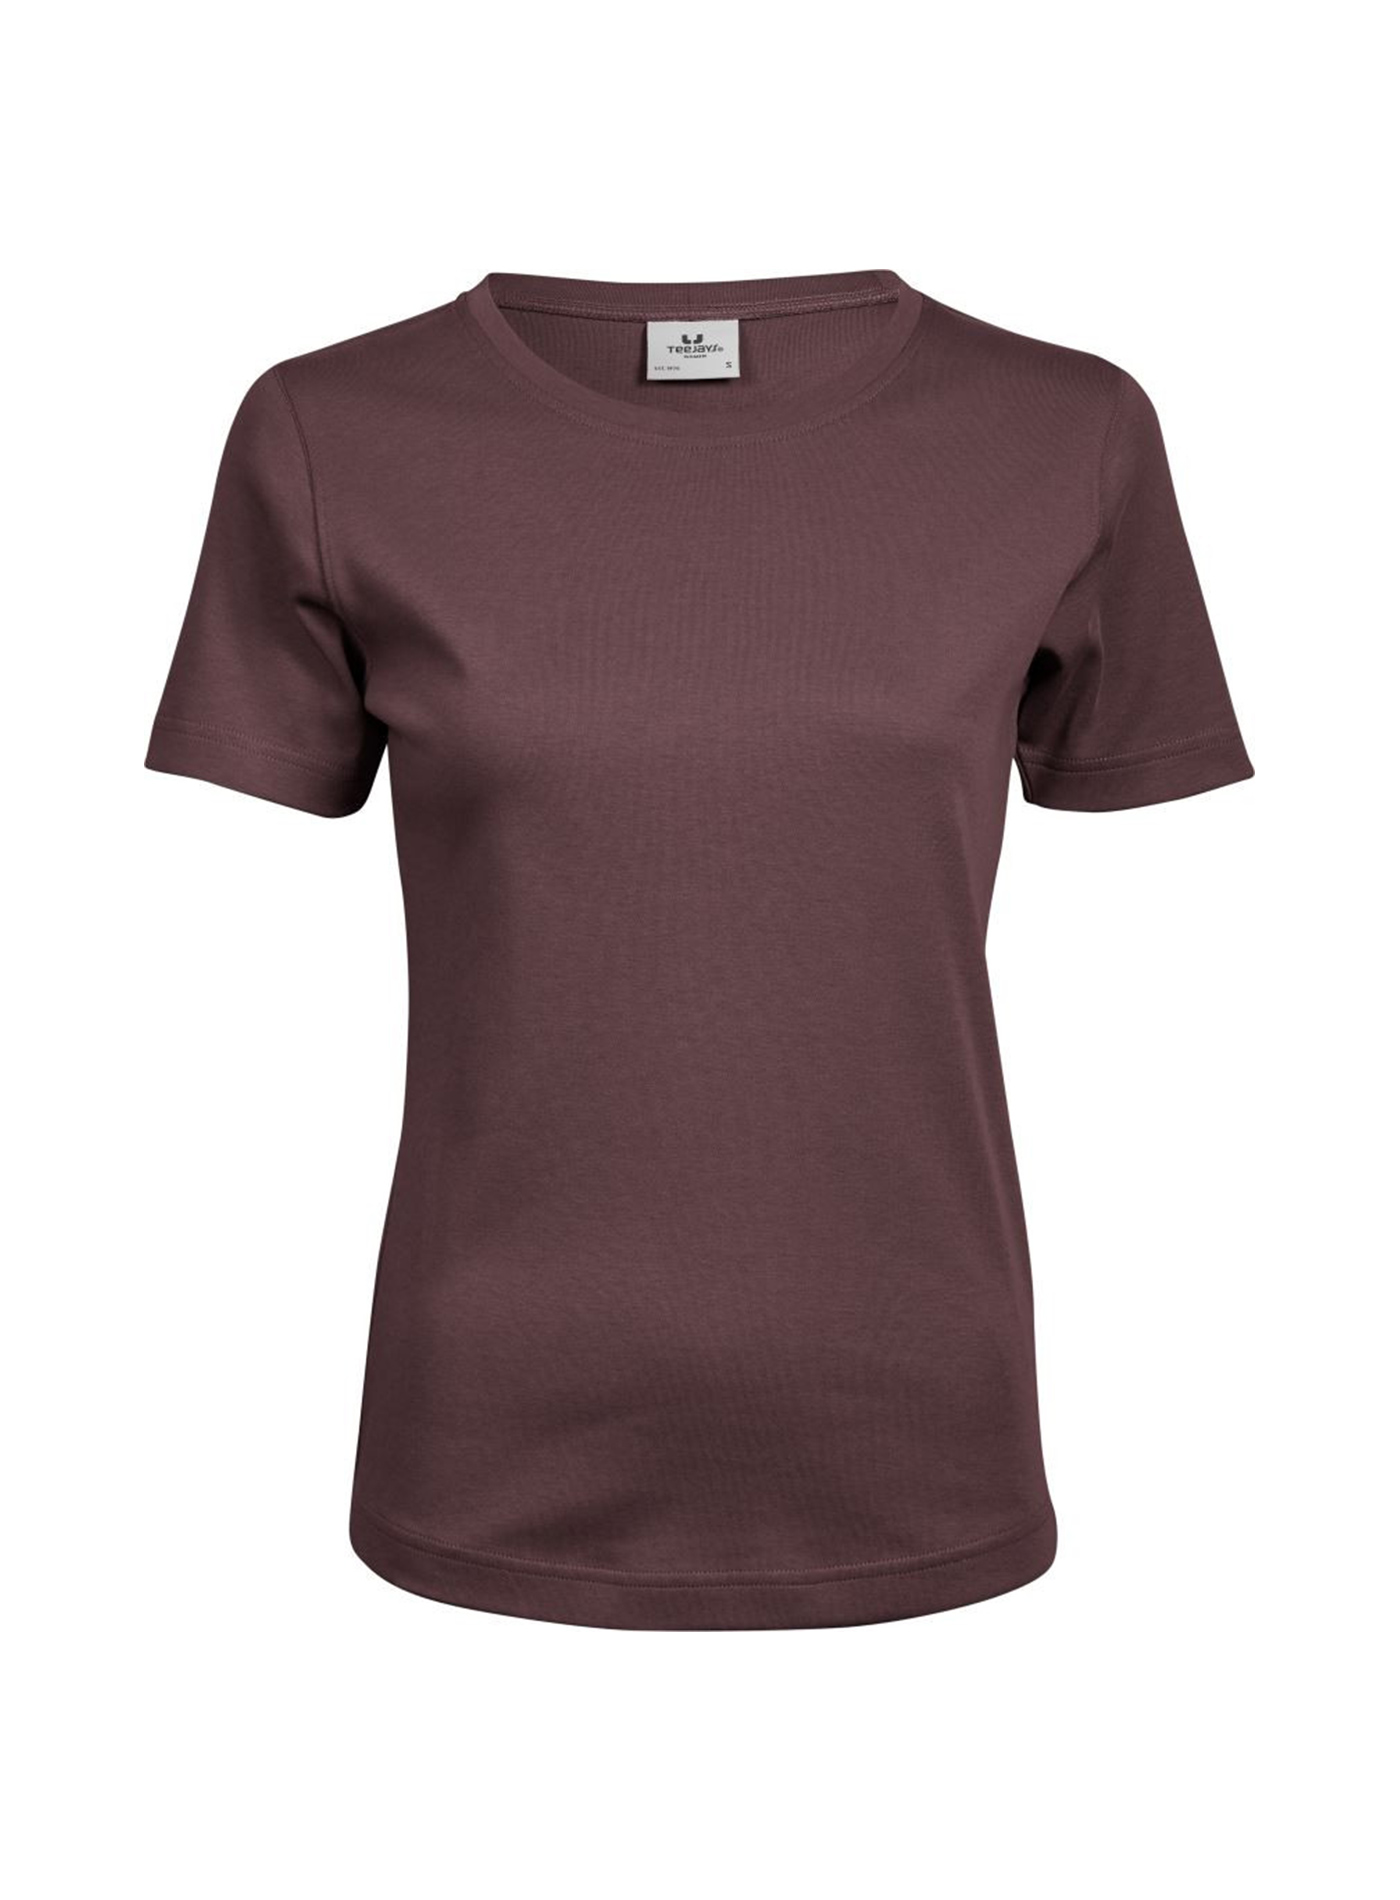 Silné bavlněné tričko Tee Jays Interlock - Hnědočervená XL